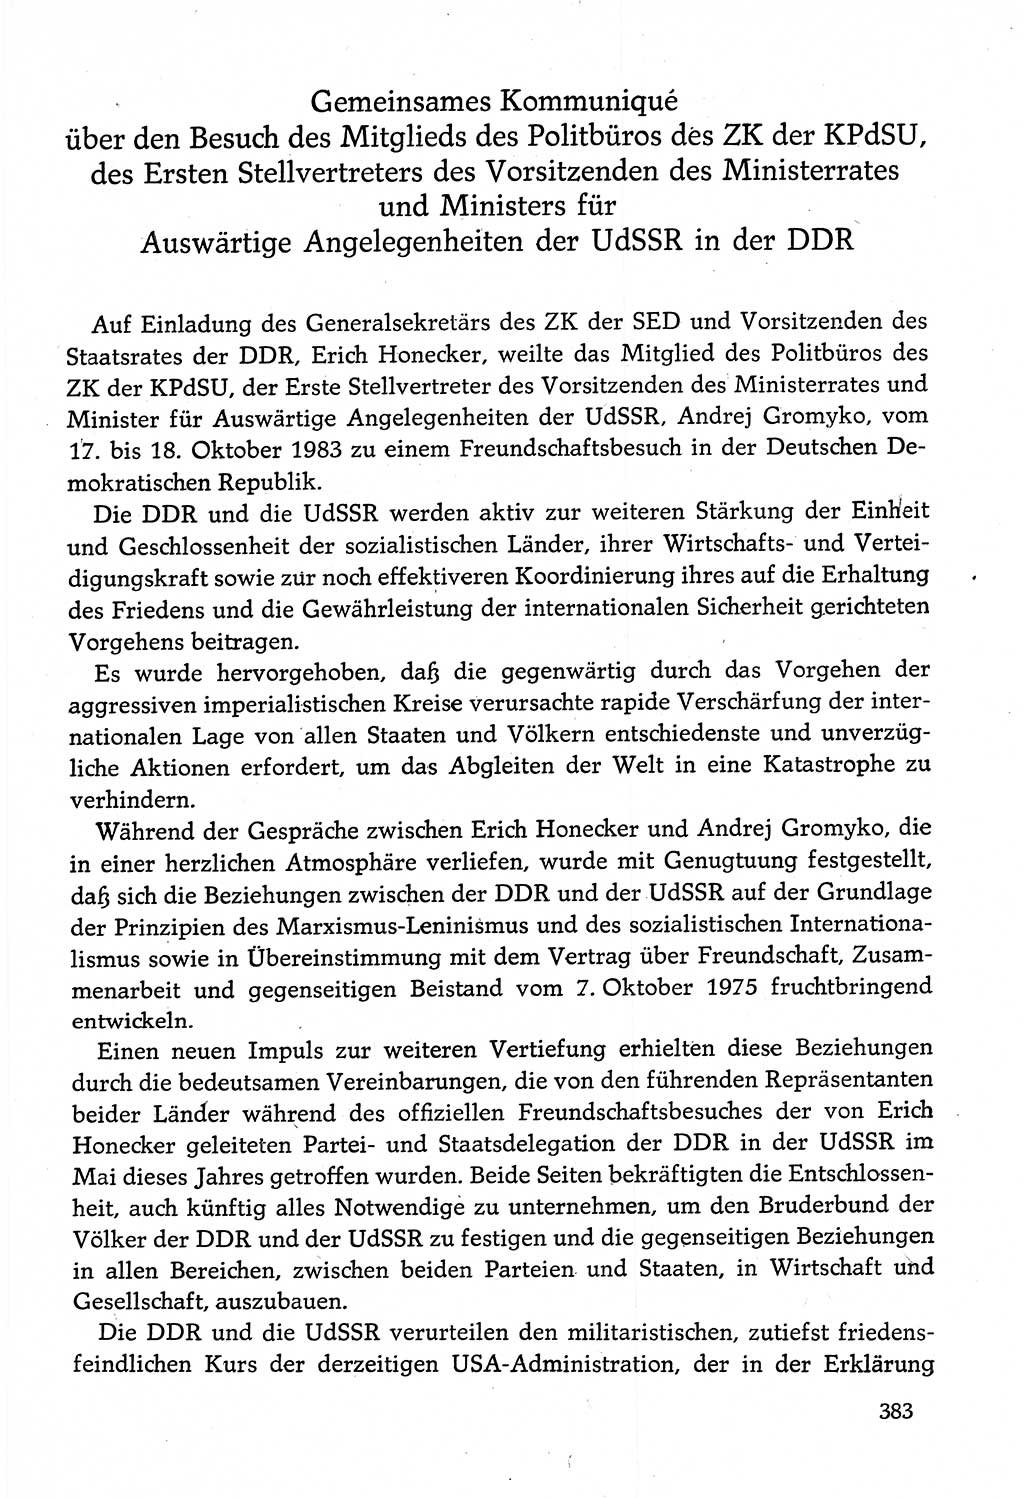 Dokumente der Sozialistischen Einheitspartei Deutschlands (SED) [Deutsche Demokratische Republik (DDR)] 1982-1983, Seite 383 (Dok. SED DDR 1982-1983, S. 383)